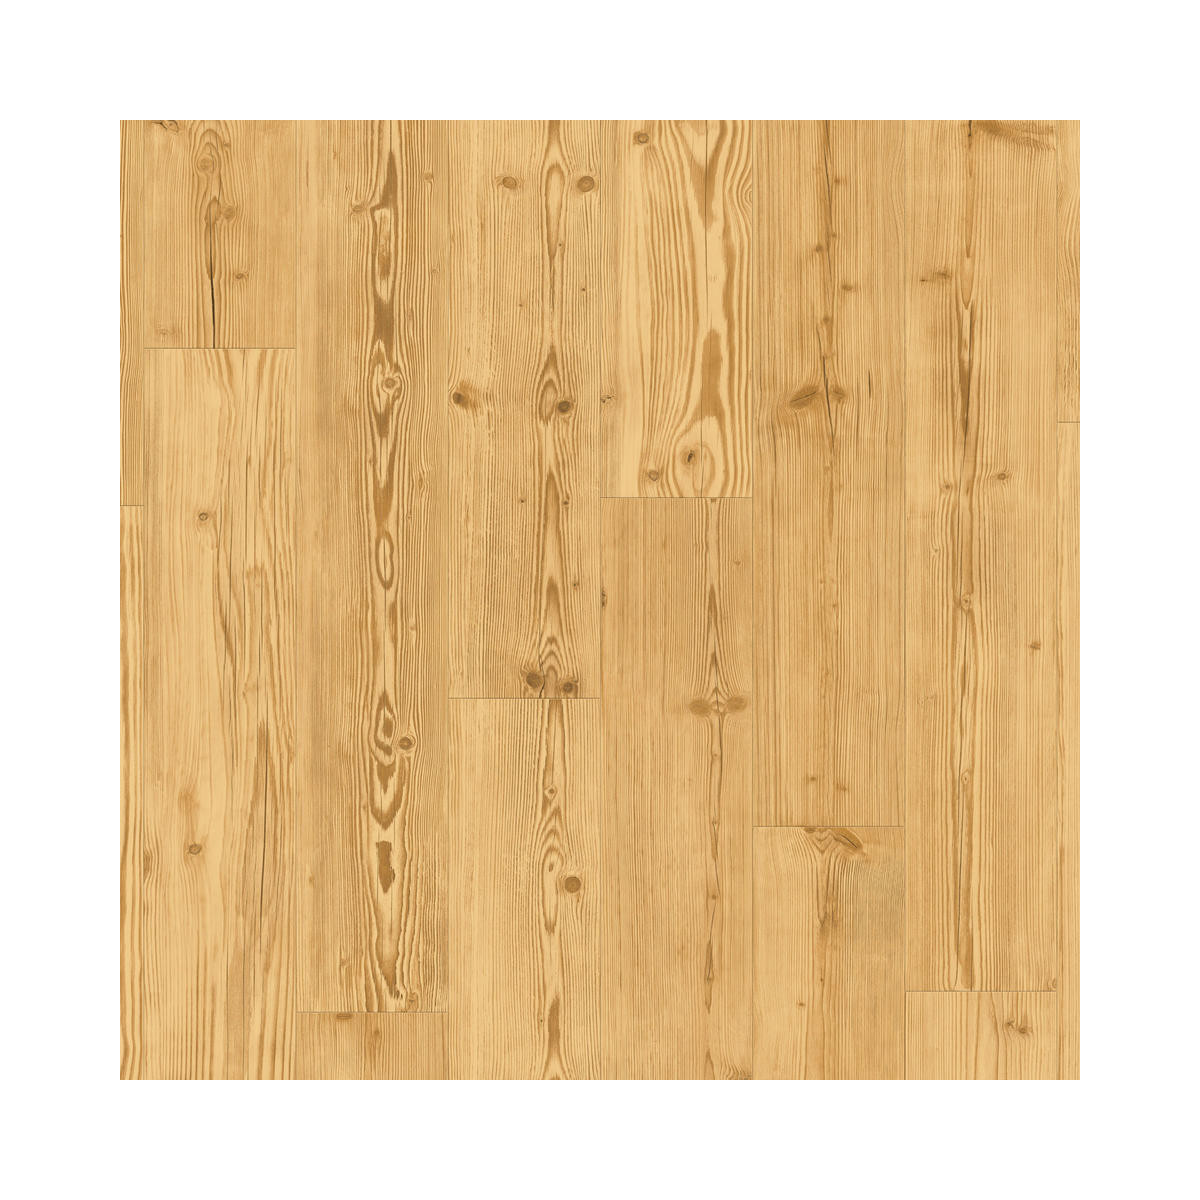 Vinylová podlaha lepená iD Inspiration 30 Classic Pine Natural